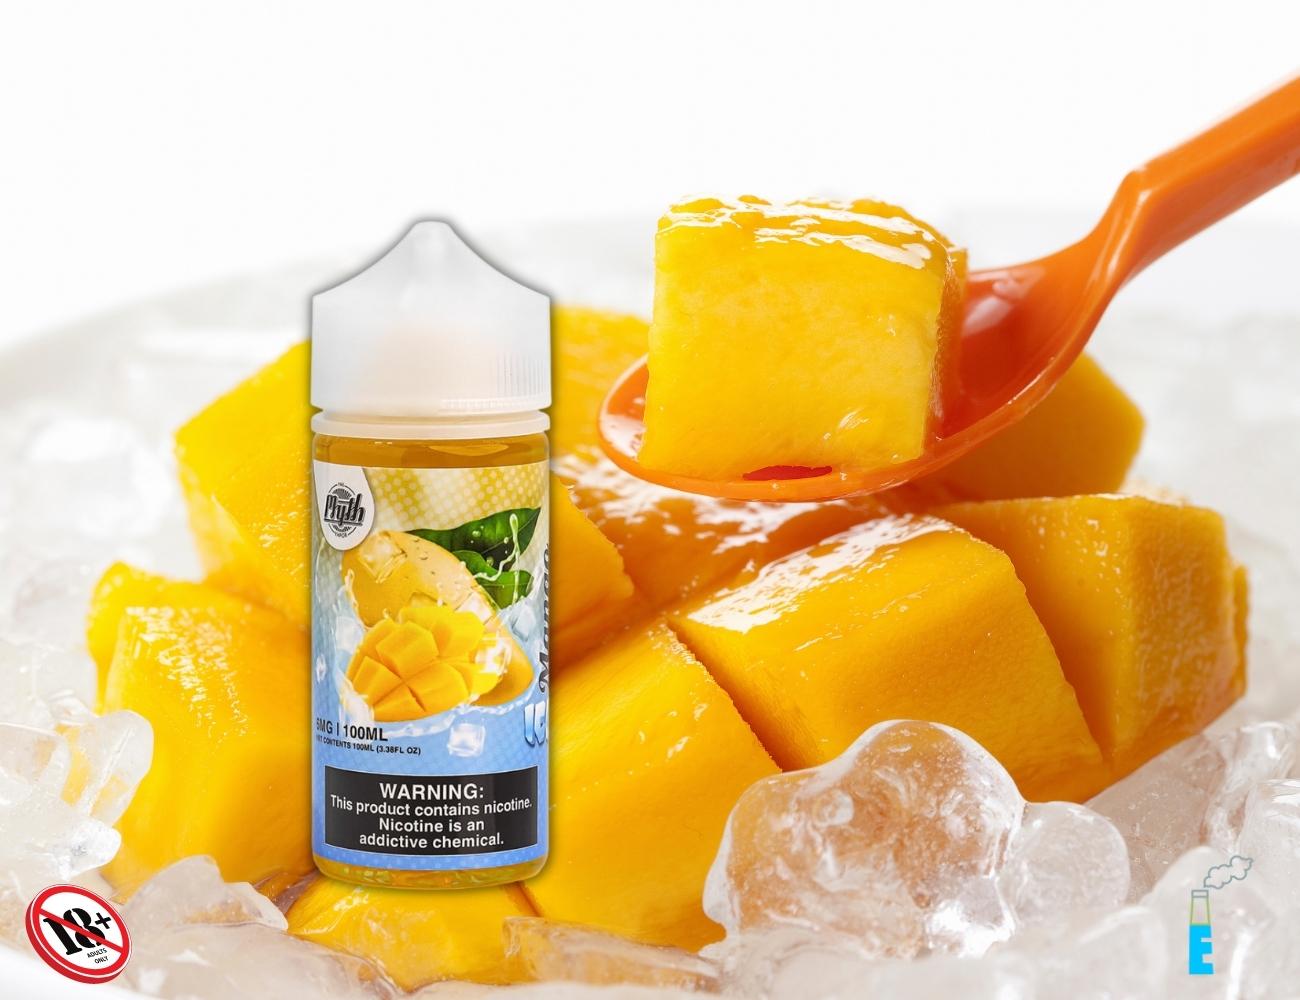 Mango Ice của The Myth Vapor sẽ đem đến cho bạn hương vị ngọt thanh từ những trái xoài chín đầy thơm ngon. Hương vị cổ điển và quen thuộc nhưng không hề gây ngán, mà trái lại, hết sức quyến rũ và tươi tắn, từng chút ngọt nhẹ đi kèm chua chua được ủ trong đá lạnh khiến những hơi hút đầy hương vị và sảng khoái.